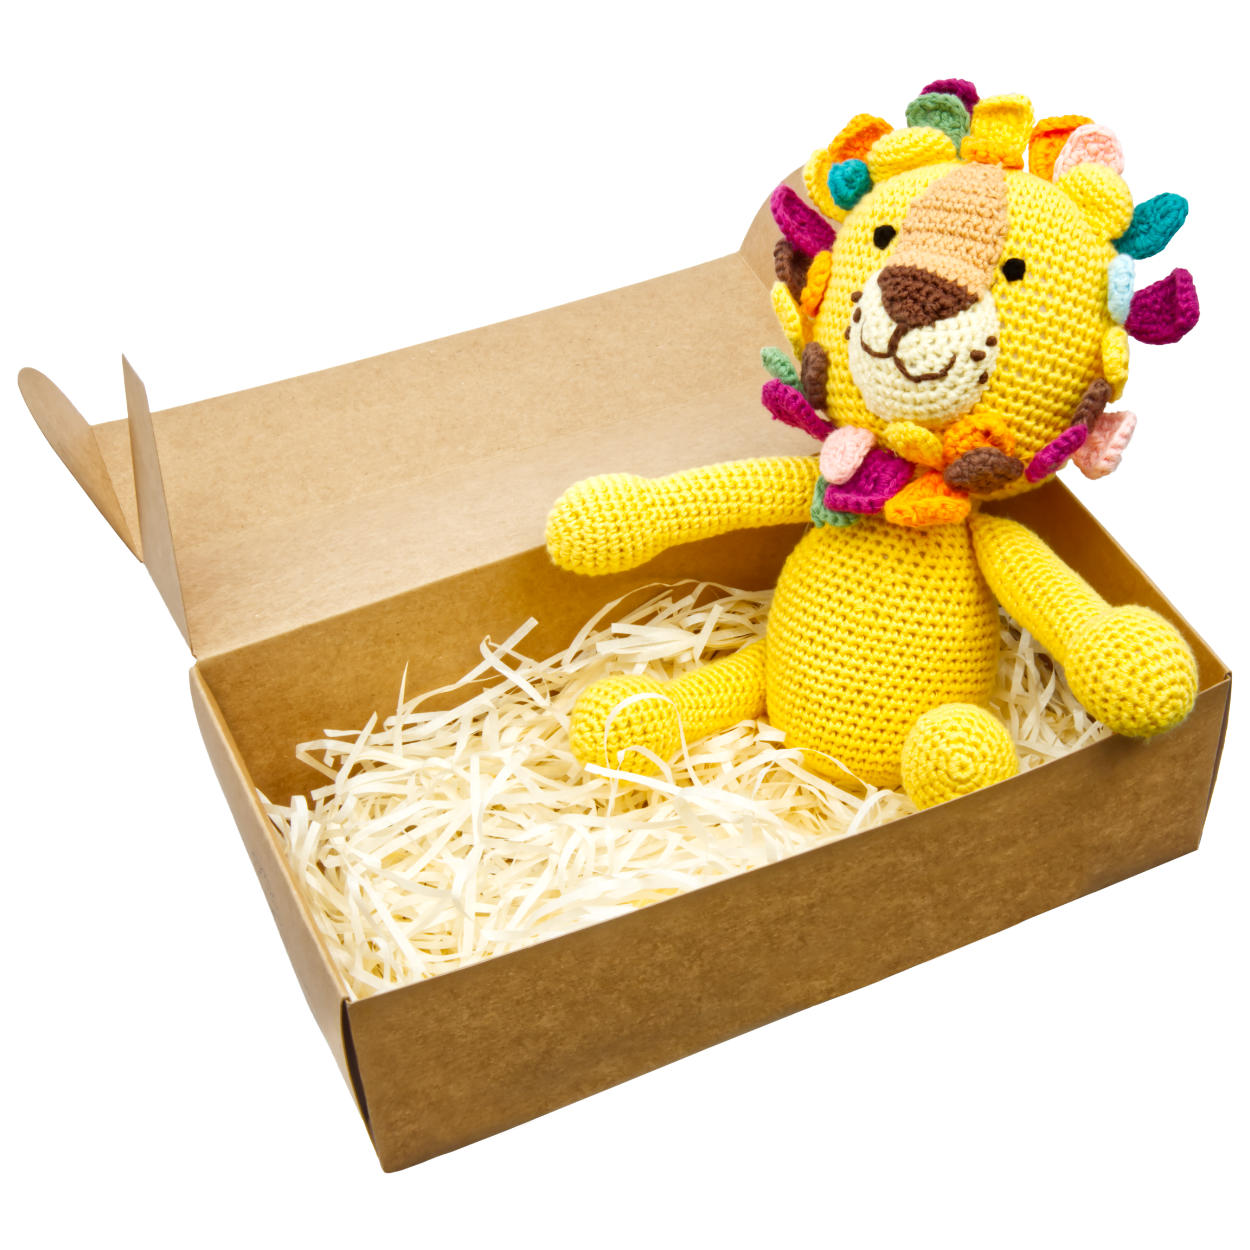 Handgestrickter Löwe "Lio" gehäkelt Spielzeug 28 cm aus Baumwolle